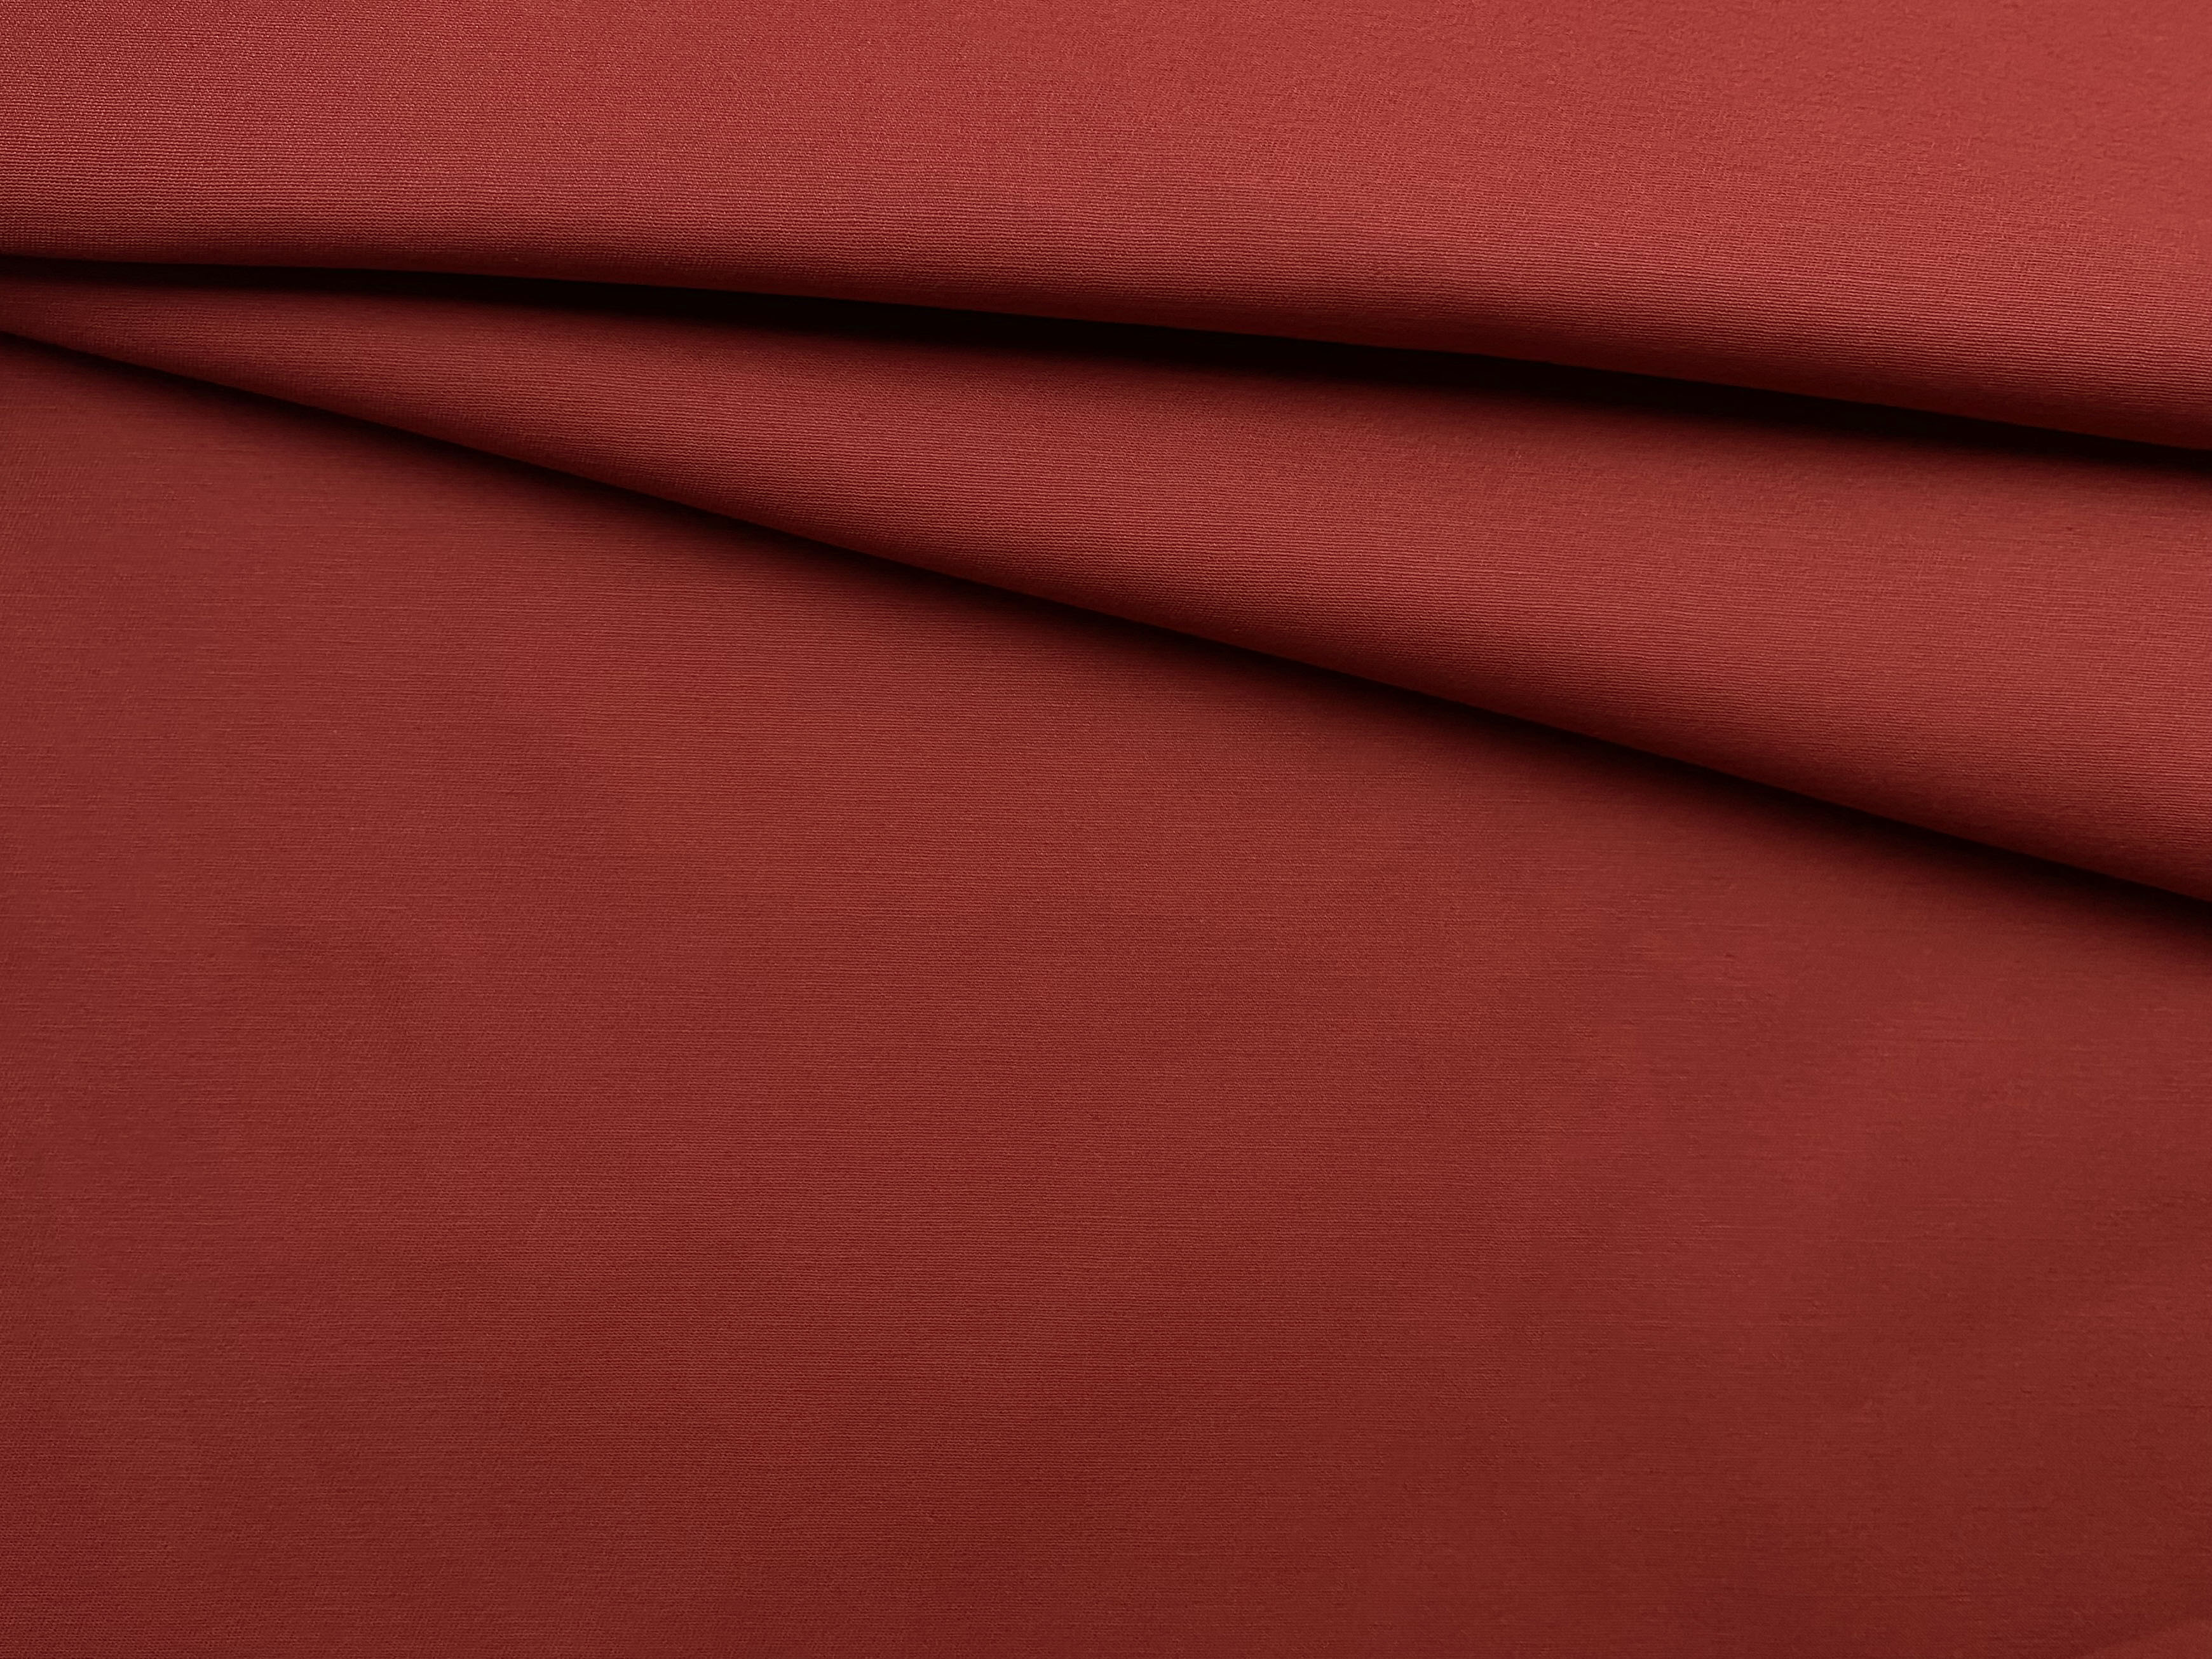 Ткань Хлопок  терракотового цвета однотонная 16847 1